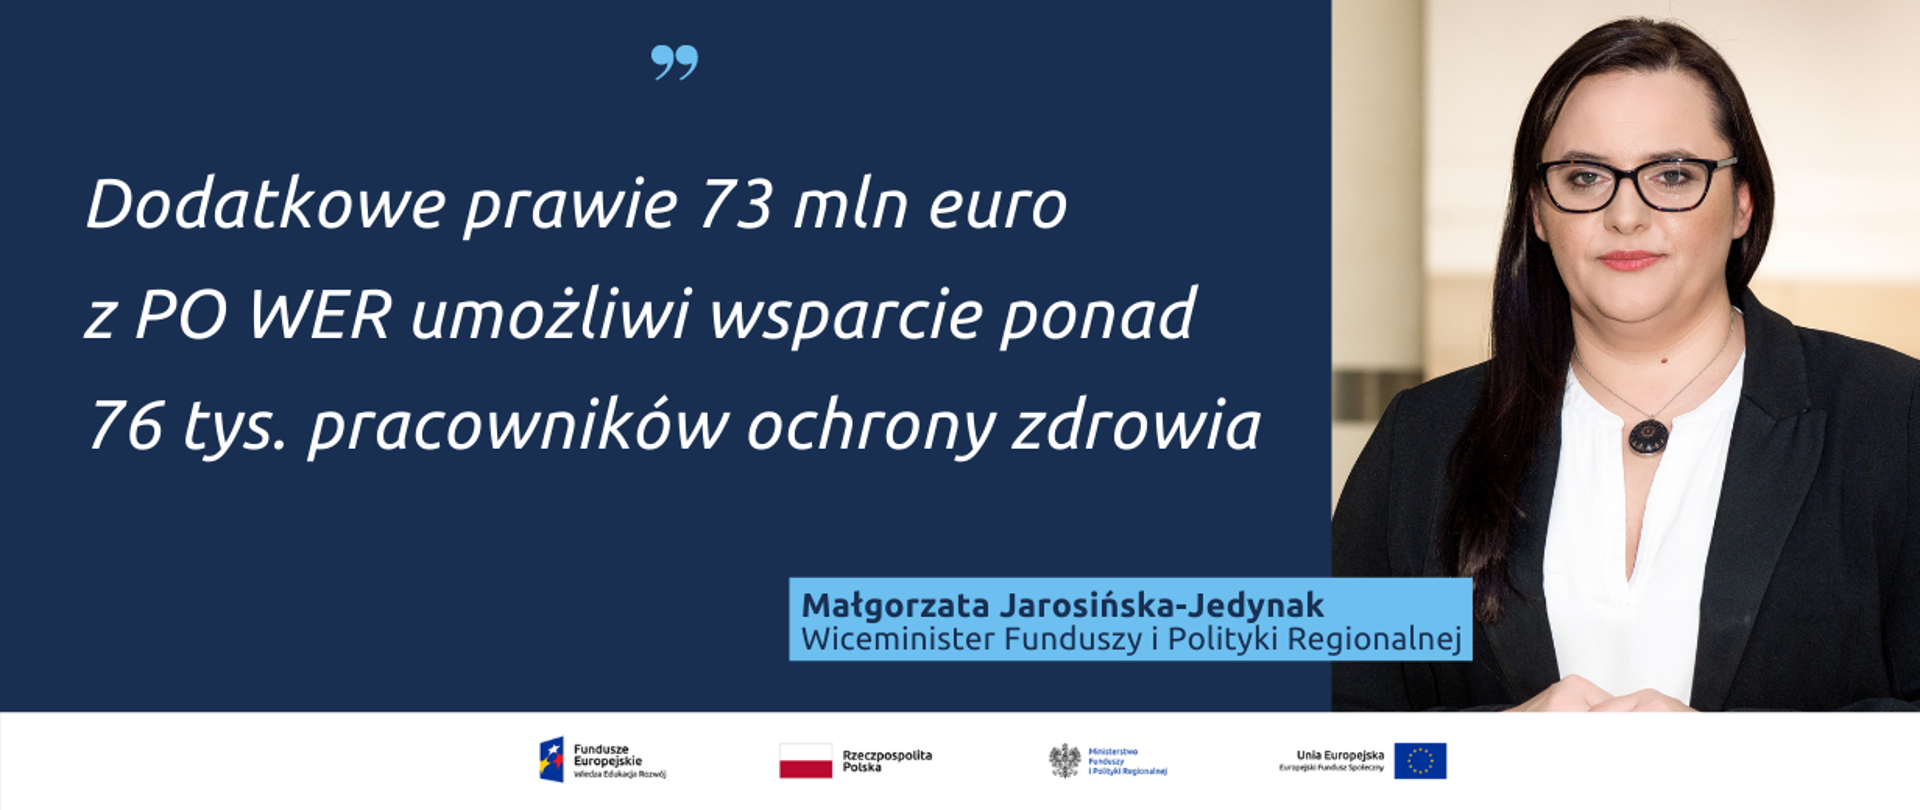 Tekst: Dodatkowe prawie 73 mln euro z PO WER umożliwi wsparcie ponad 76 tys. pracowników ochrony zdrowia. Obok zdjęcie portretowe wiceminister Małgorzaty Jarosińskiej-Jedynak.